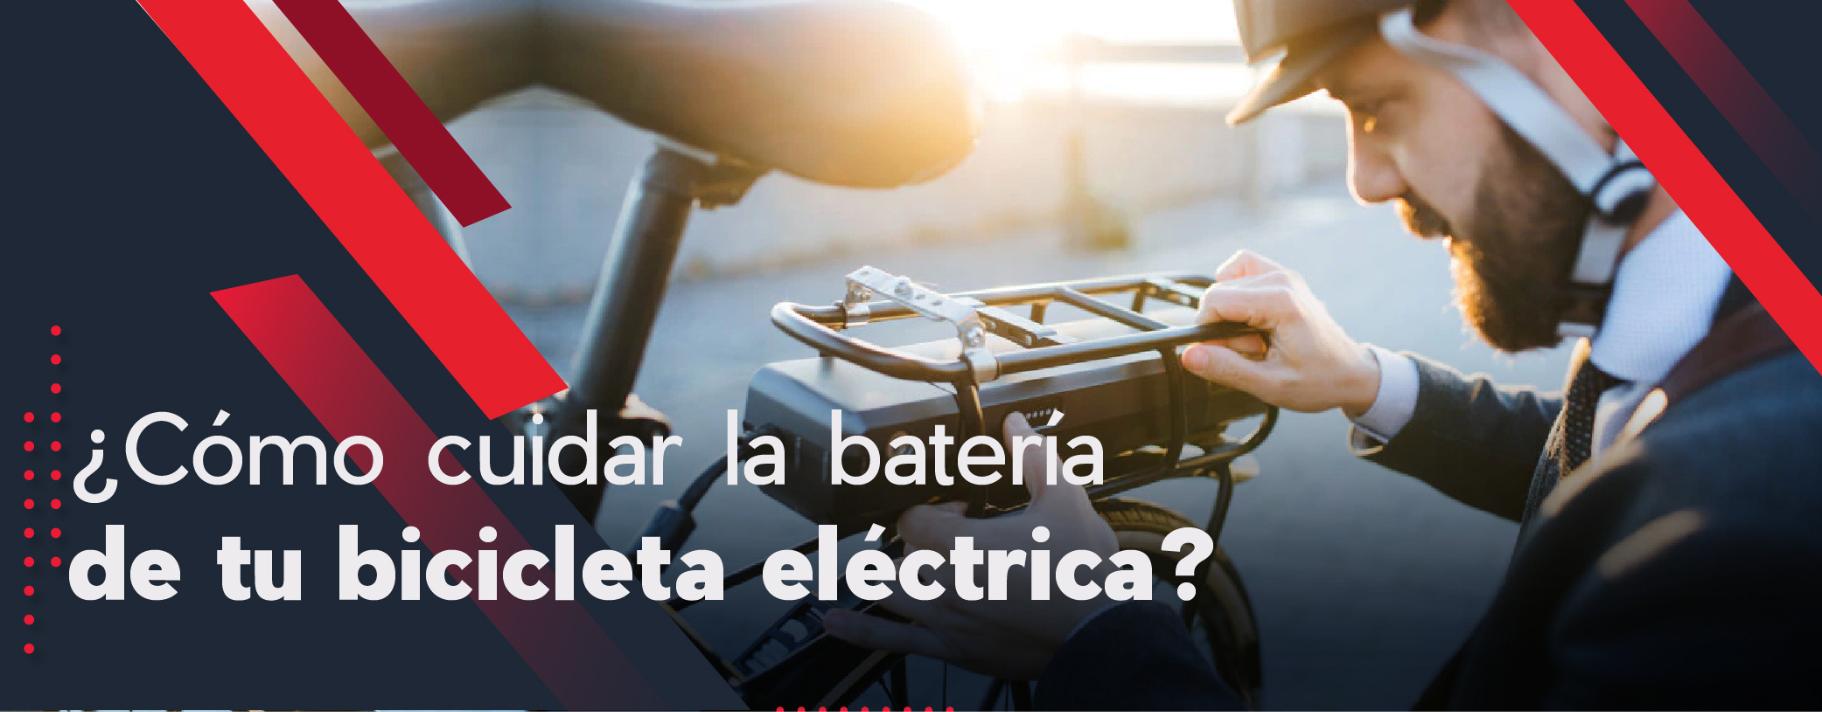 Cómo poner batería a una bicicleta